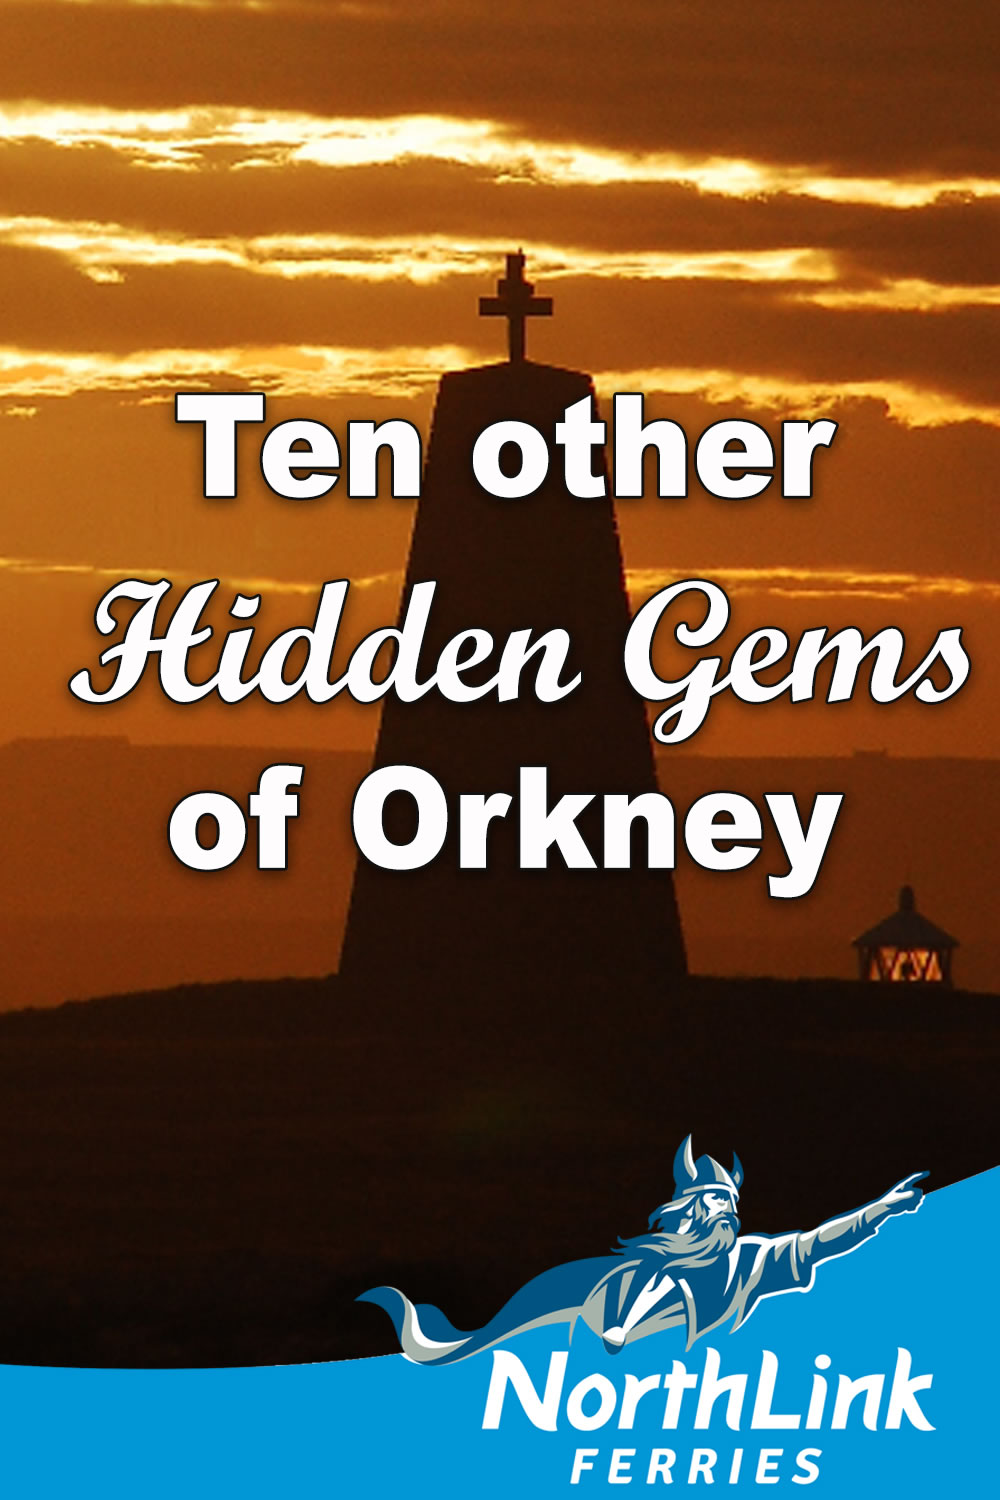 Ten other hidden gems of Orkney